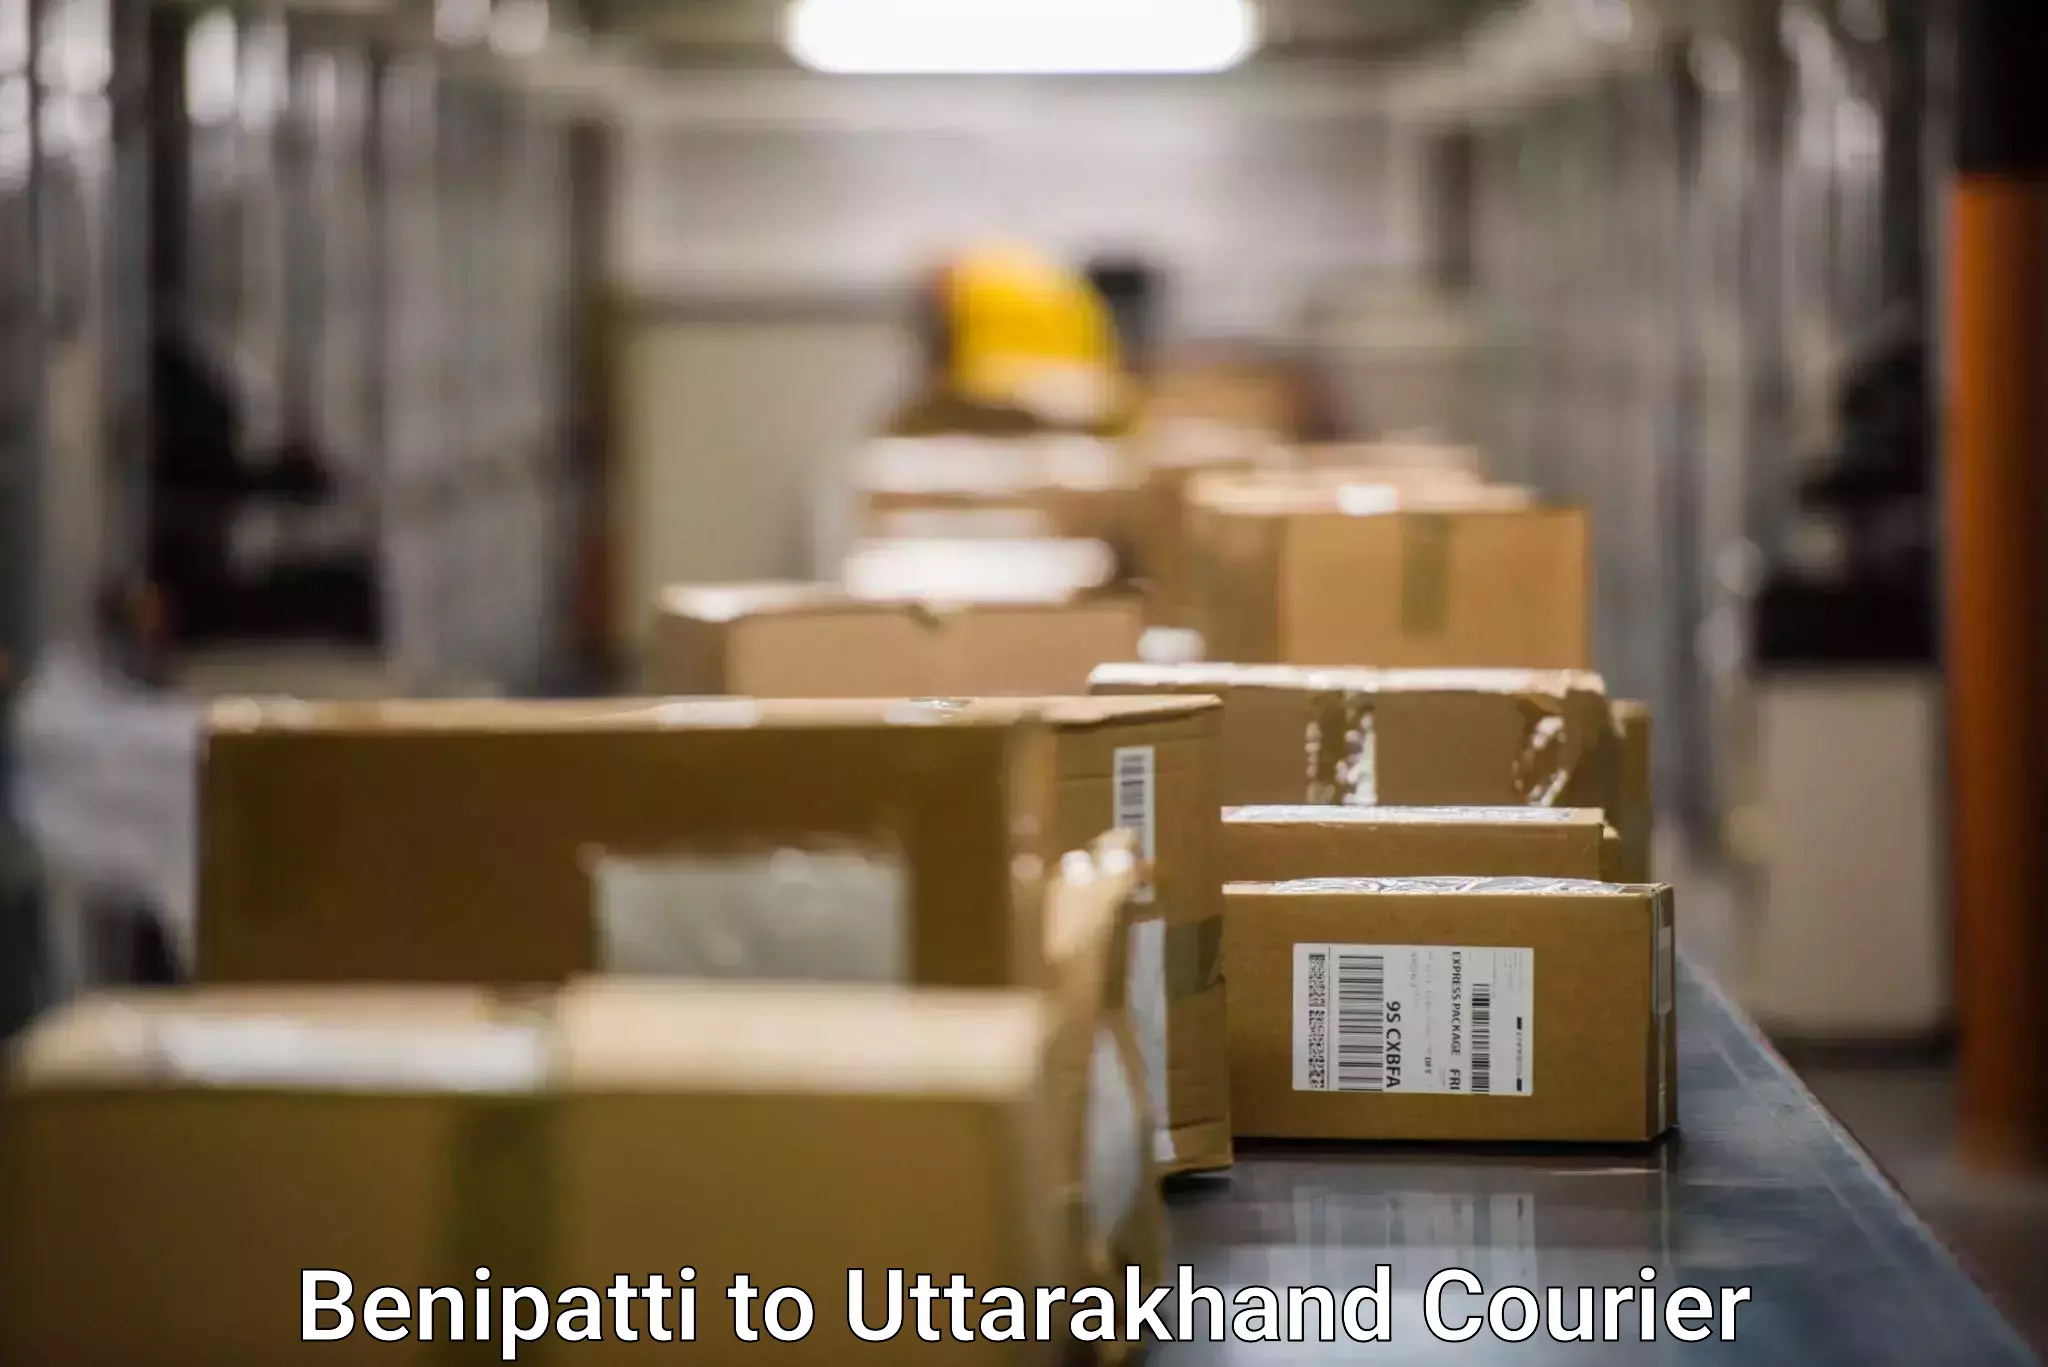 Next-day freight services Benipatti to Kashipur